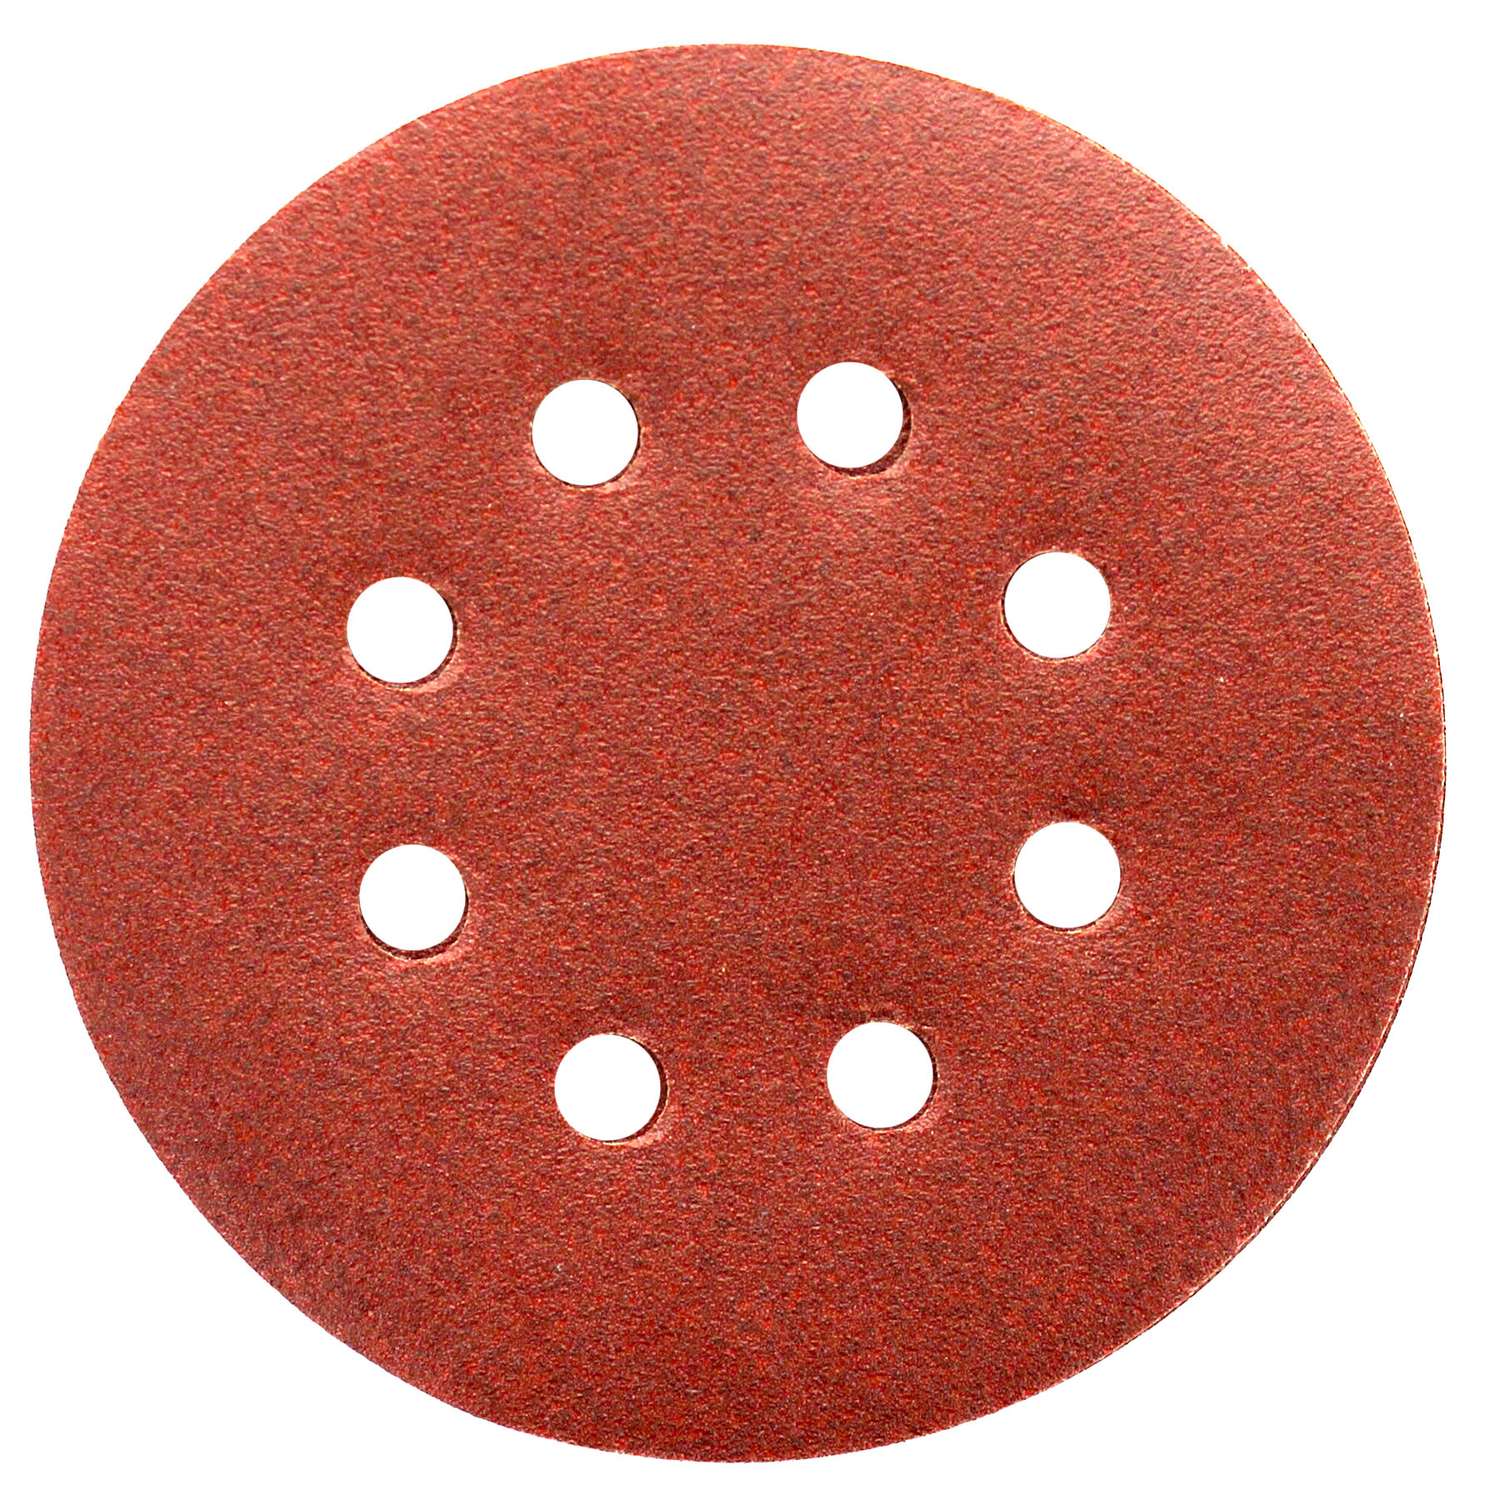 2″ Screw-Lok Aluminum Oxide Sandpaper Discs with Holes, 24, 40, 80